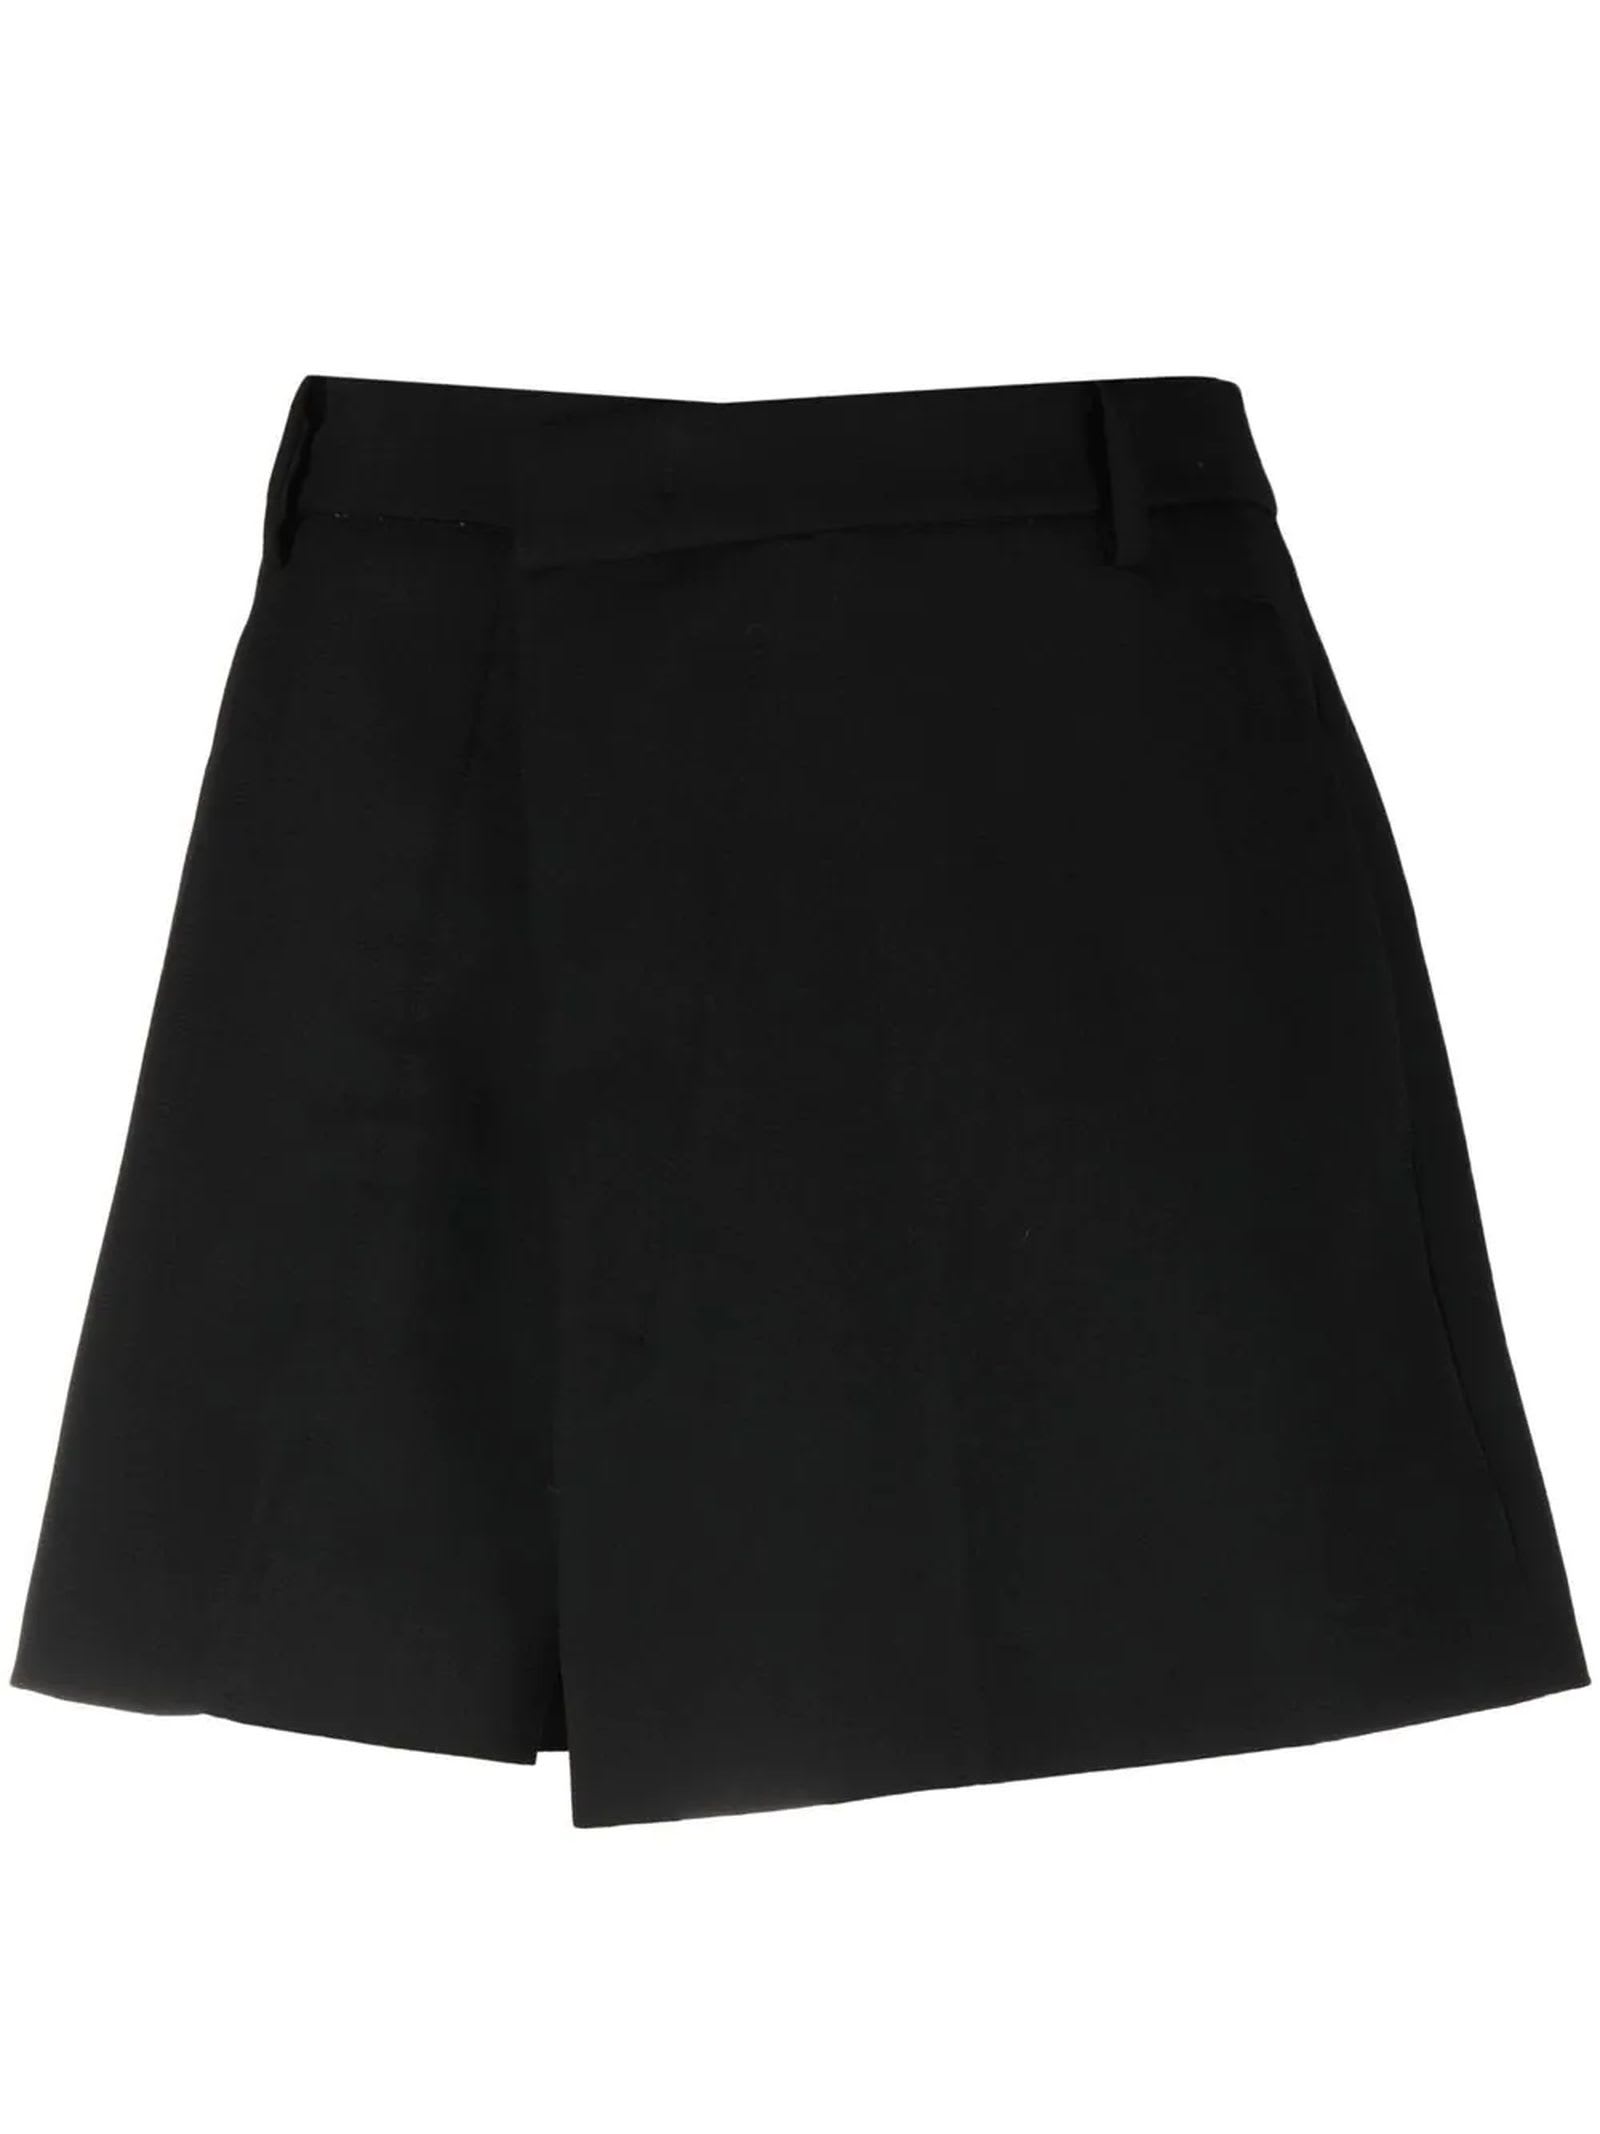 N.21 Black Virgin Wool Mini Skirt